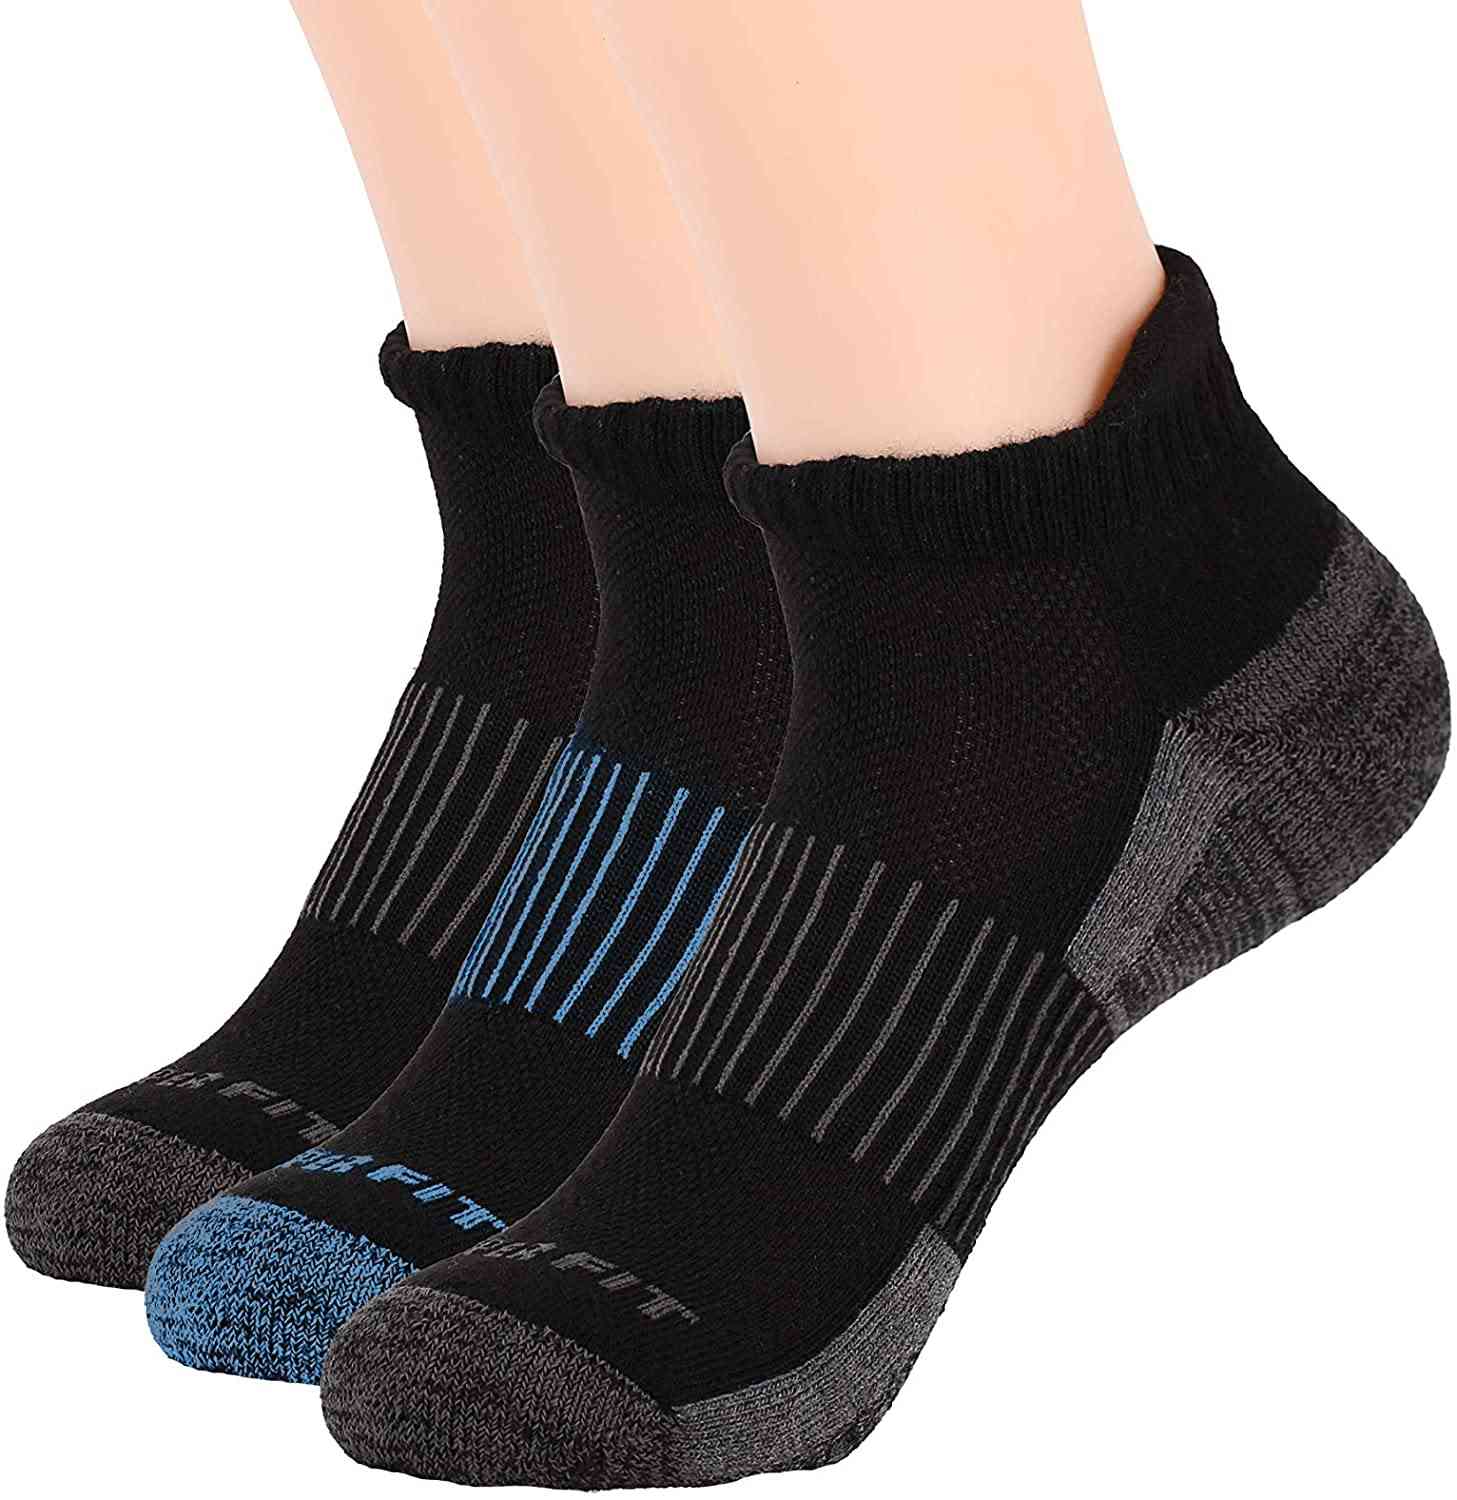 гладки медни чорапи